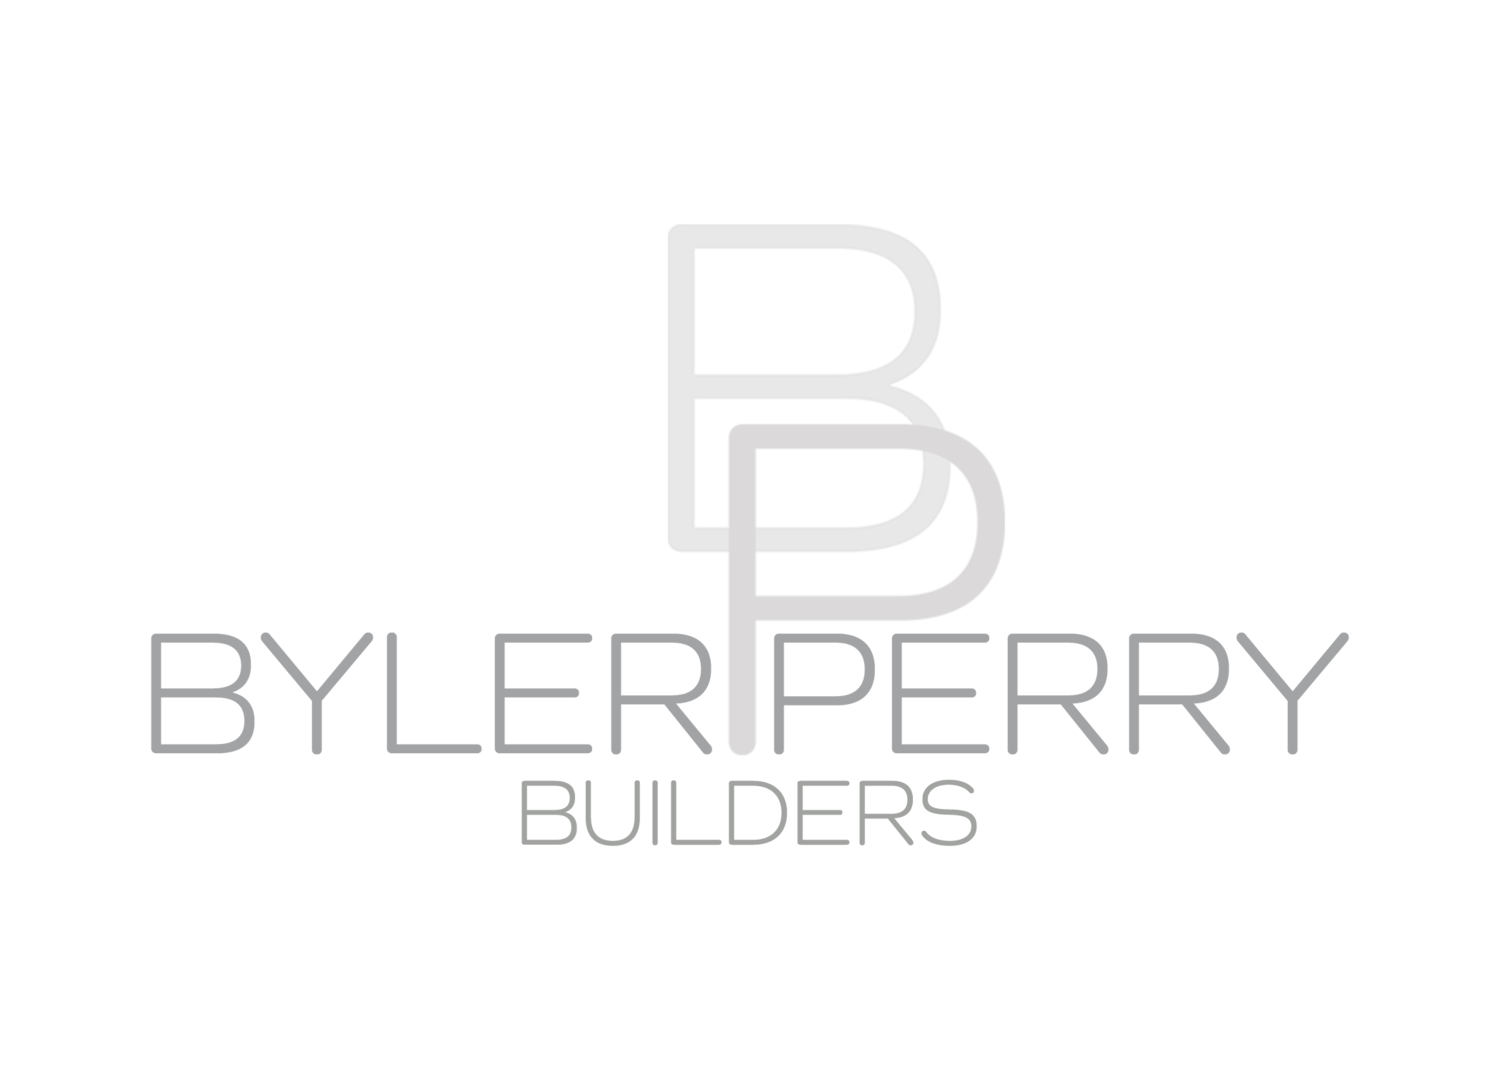 Byler Perry Builders logo